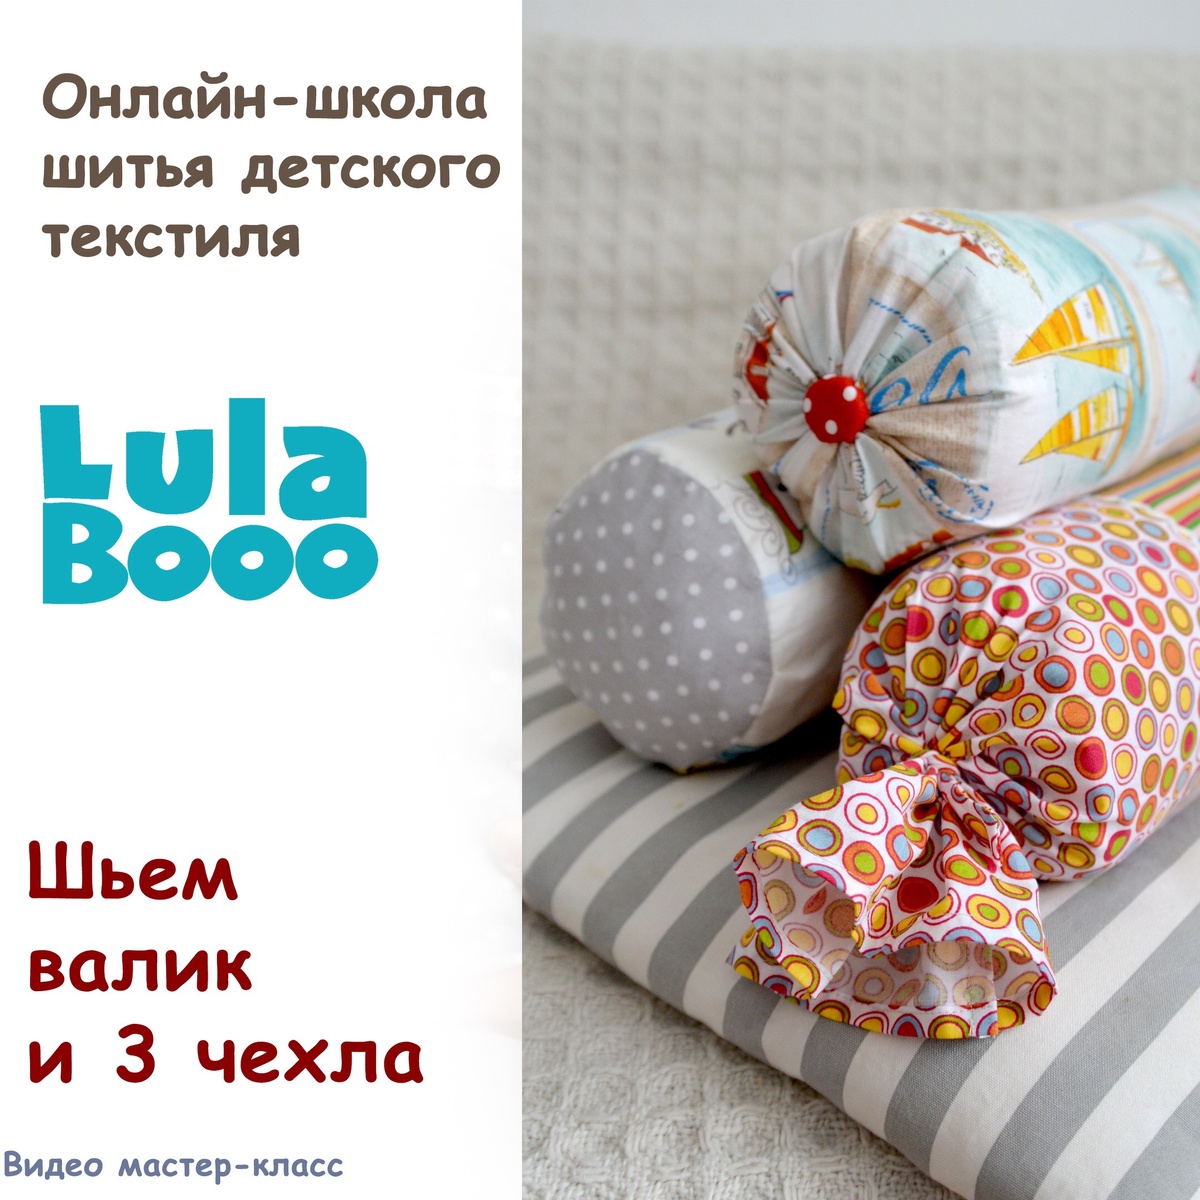 Бортики в кроватку для новорождённых своими руками: советы и инструкция